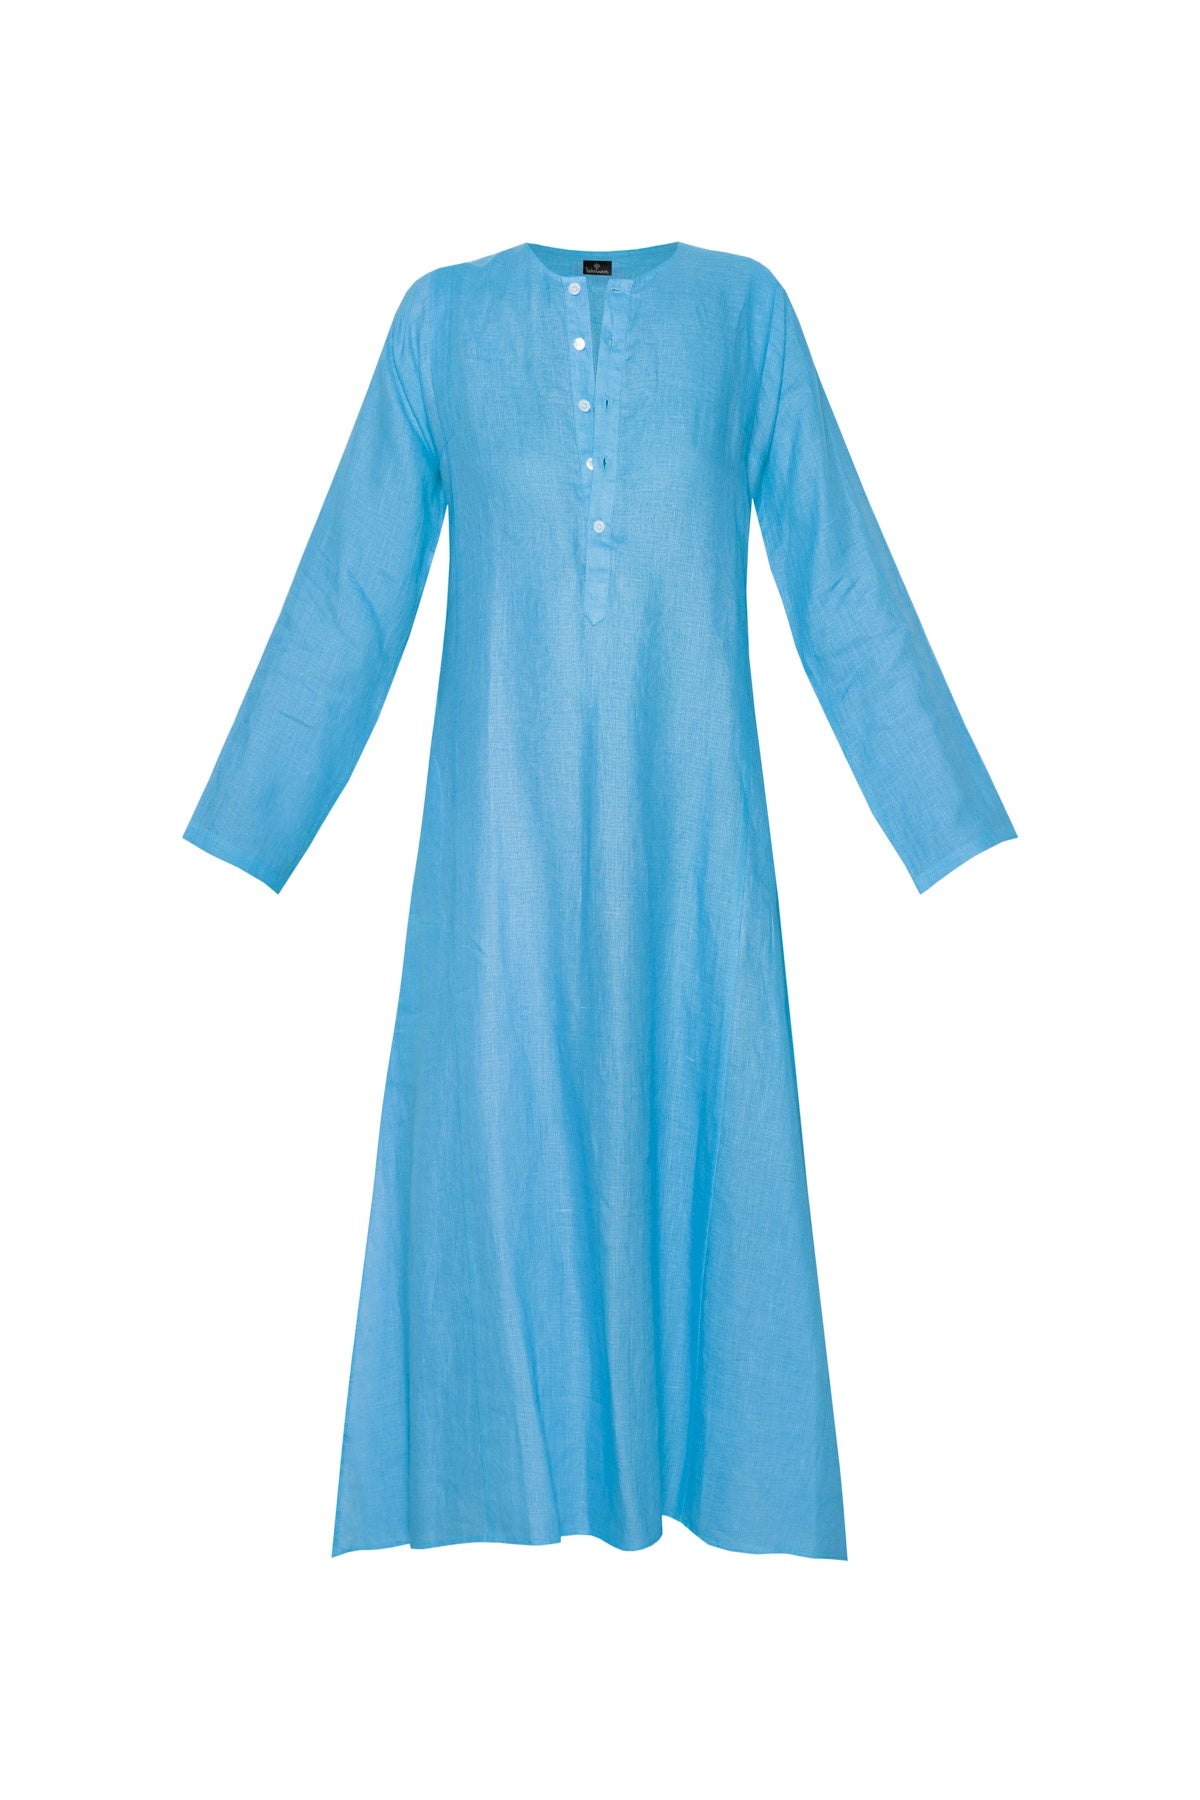 Lulu Linen Dress - Light Blue